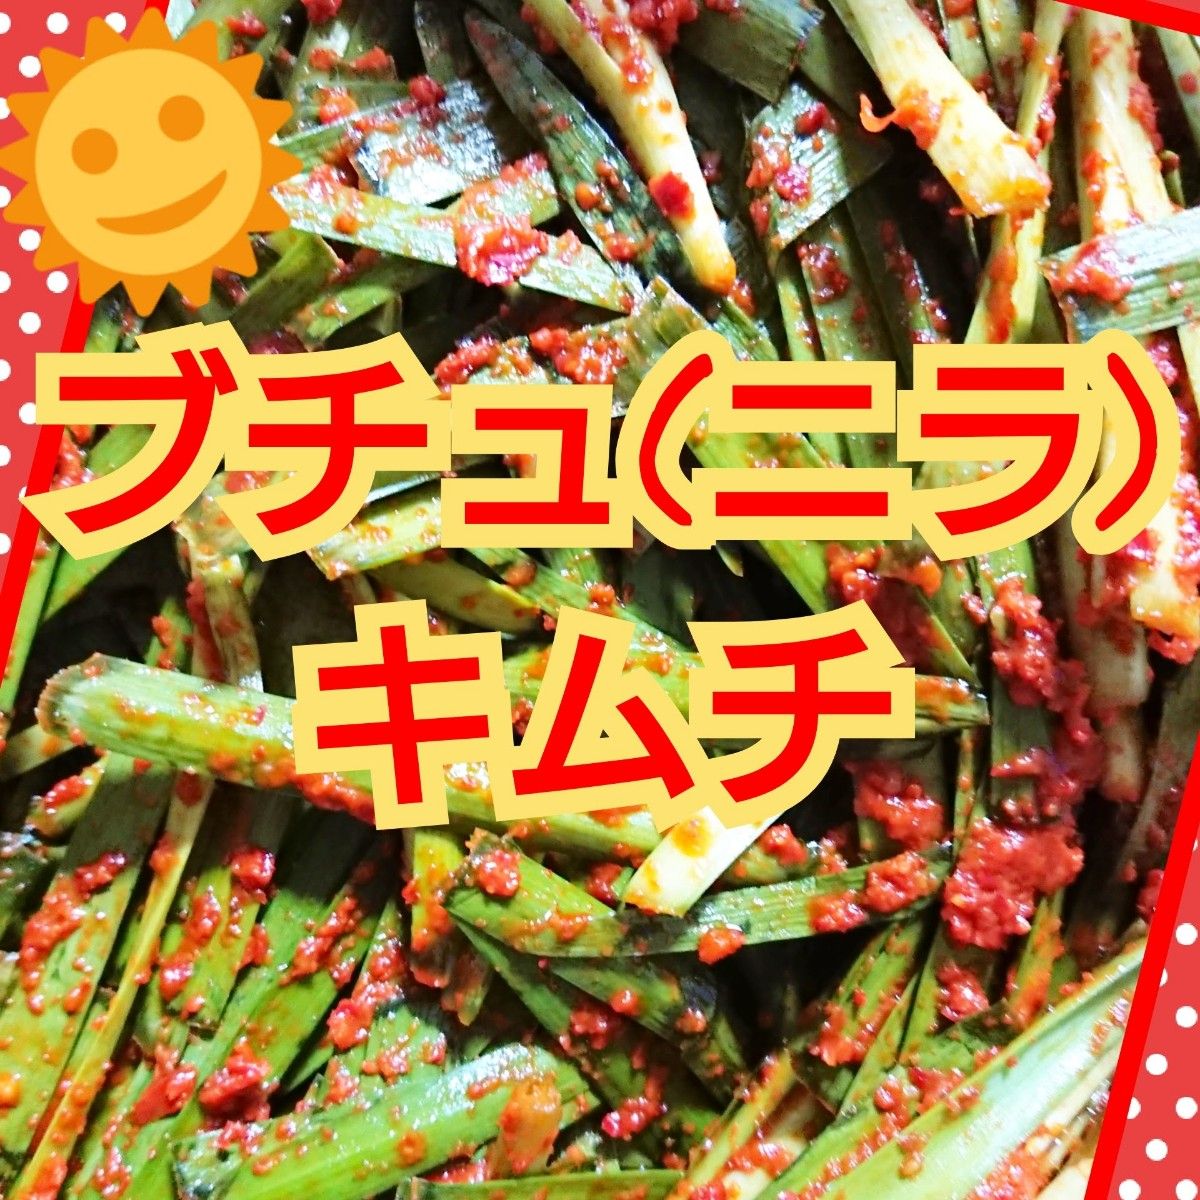 【本場の味&自家製】激辛白菜キムチ1kg + ブチュ(ニラ)キムチ300g